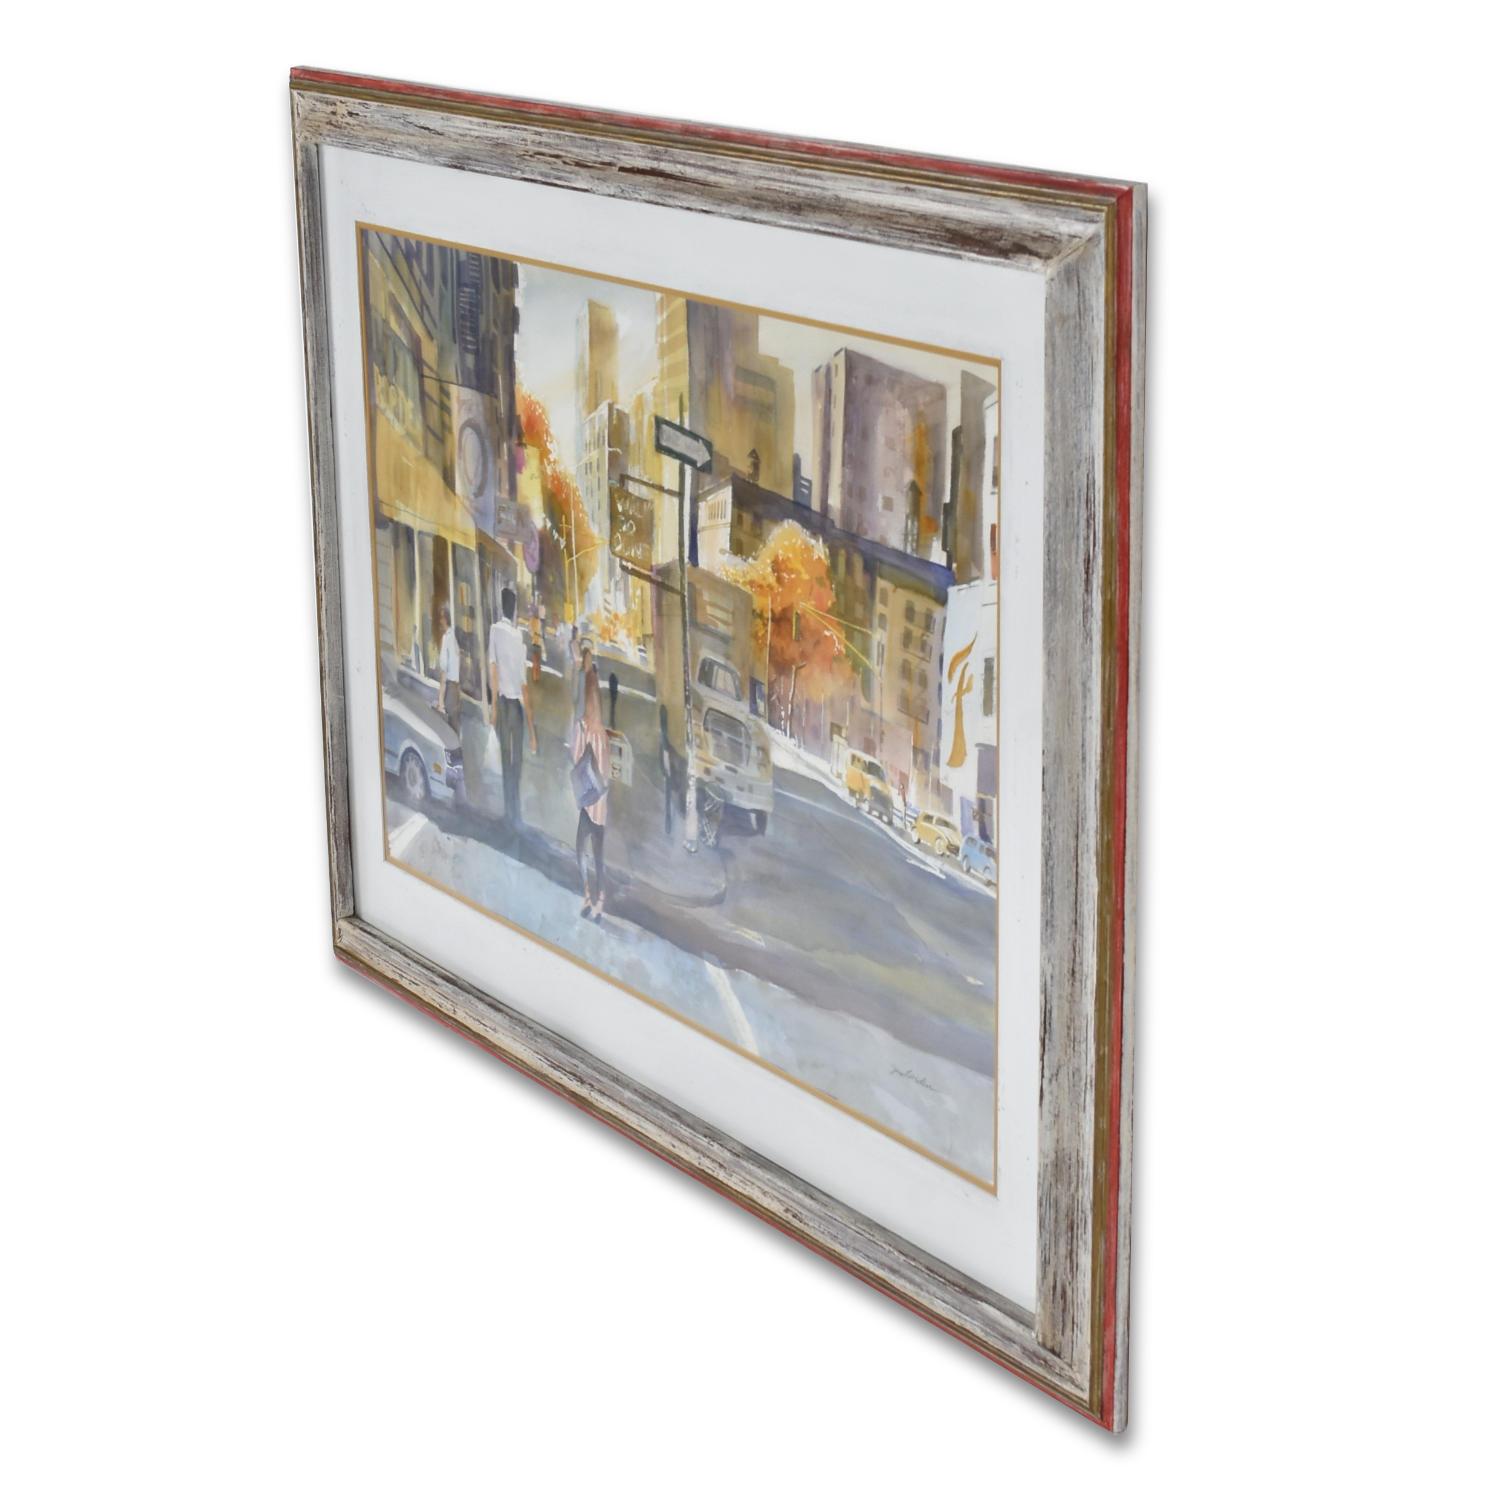 Scène de rue absolument magistrale peinte à l'aquarelle par James C.C. Borden (1928-2013). Préparez-vous à être stupéfait lorsque vous poserez les yeux sur cette aquarelle aux détails exquis réalisée par James Borden. Cette peinture moderne dépeint